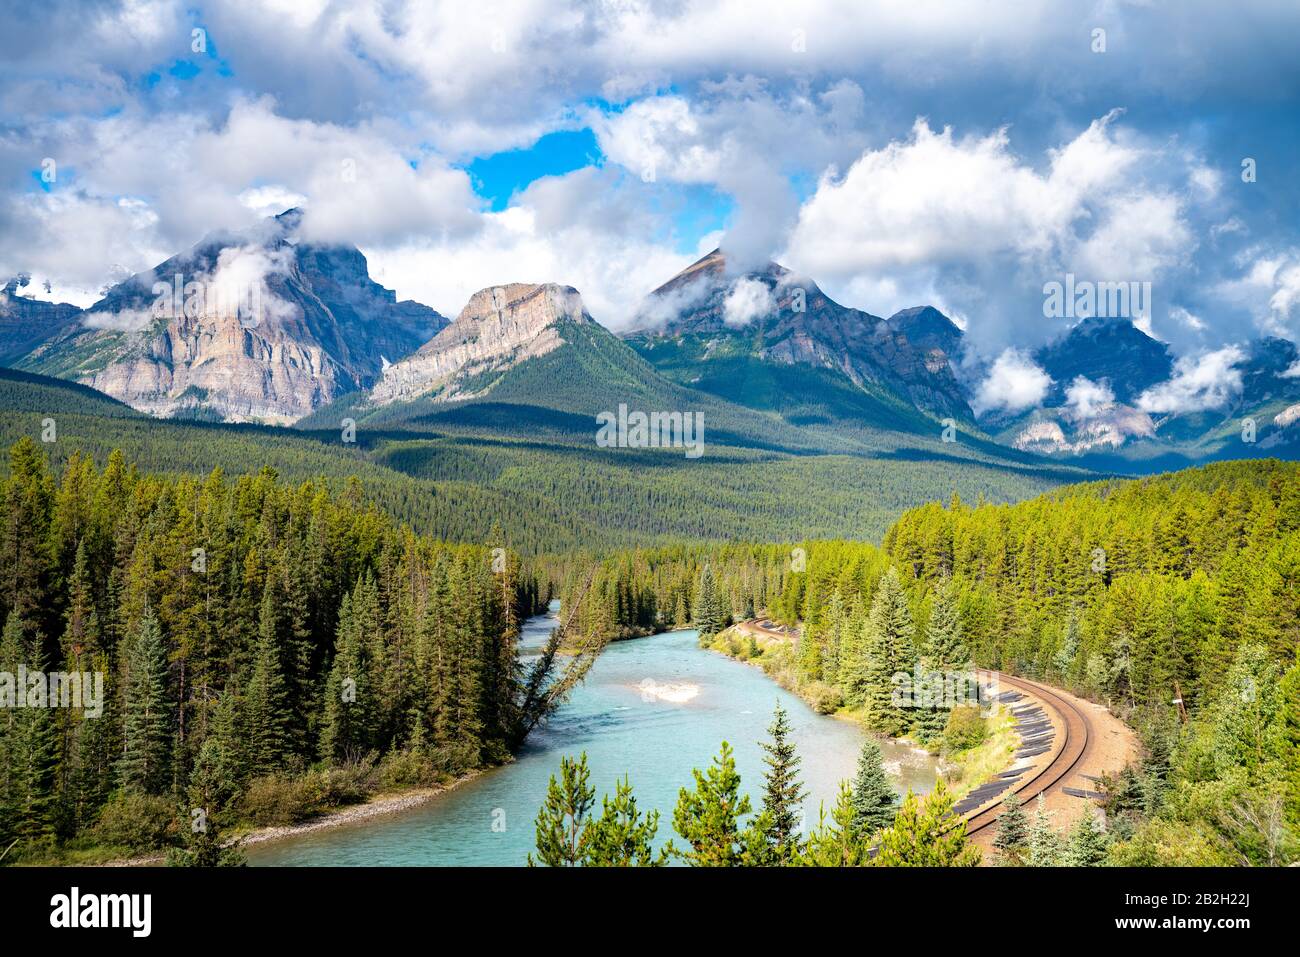 Morant's Curve, célèbre paysage avec chemin de fer. Parc National Banff, Canada Banque D'Images